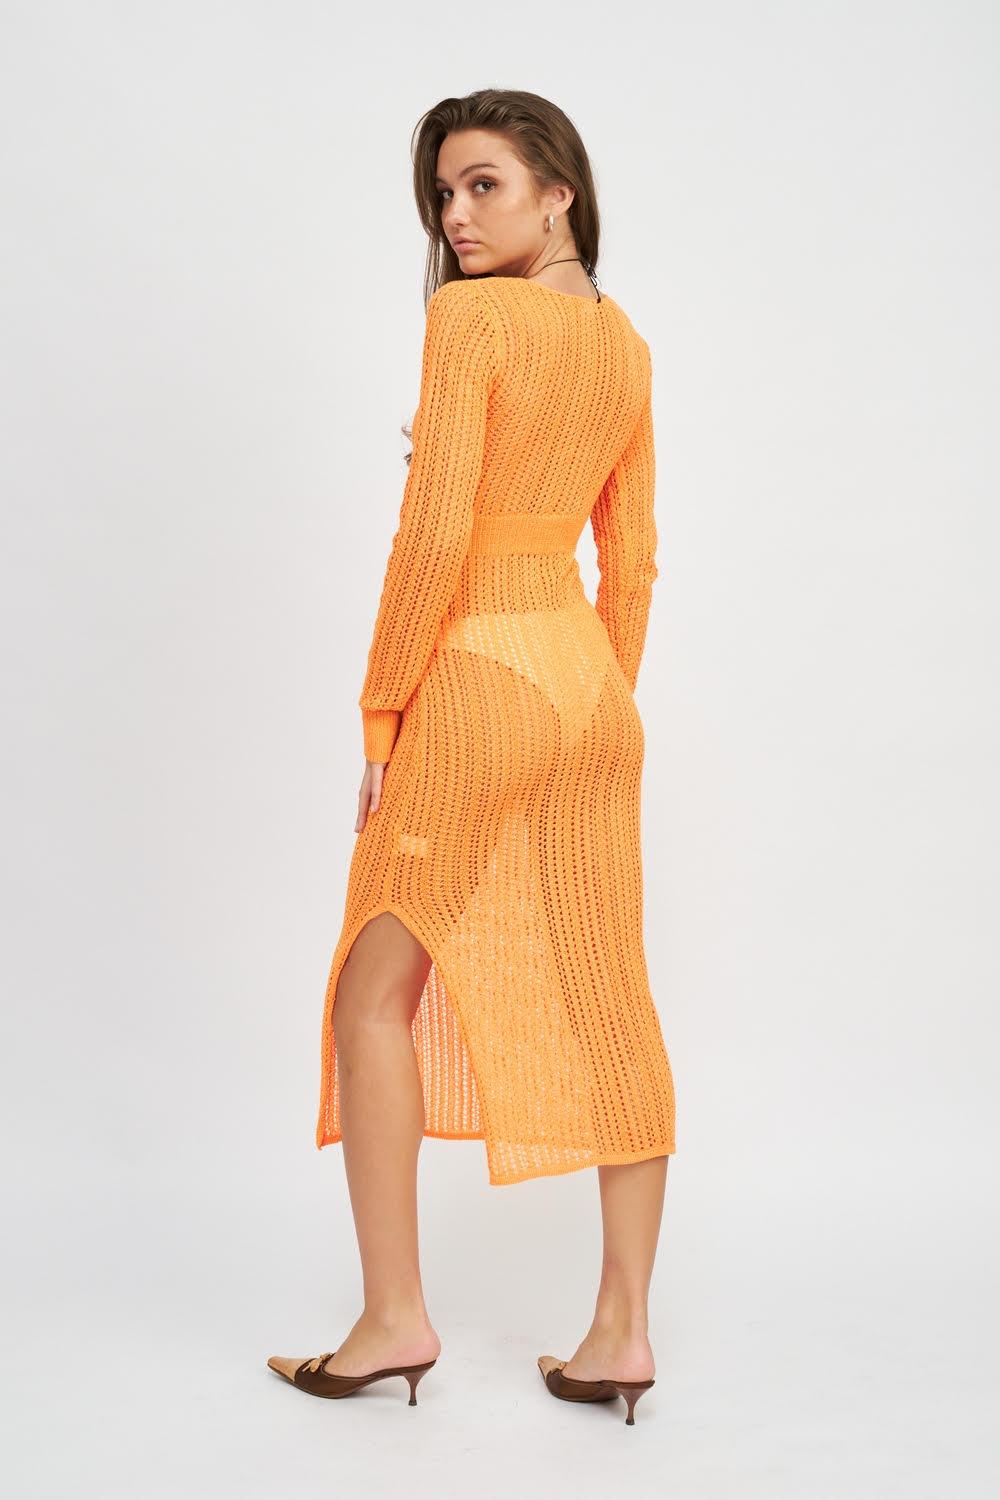 Tangerine Crochet Twist Front Dress